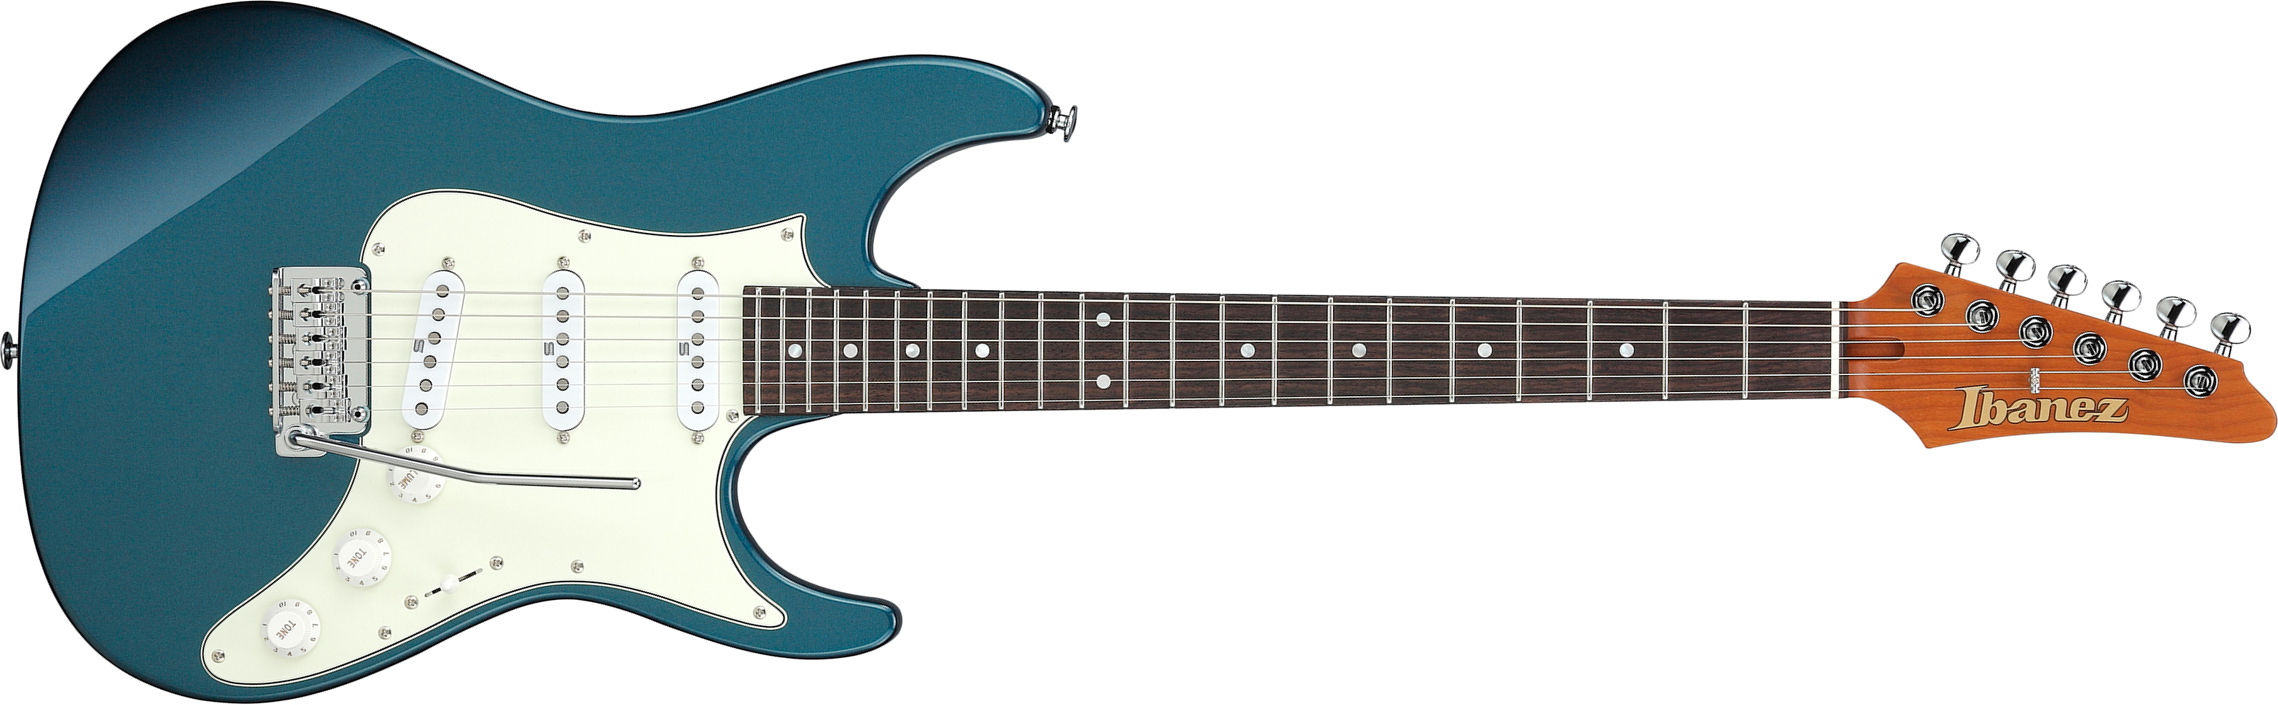 Ibanez Az2203n Atq Prestige Jap 3s Seymour Duncan Trem Rw - Antique Turquoise - Guitare Électrique Forme Str - Main picture